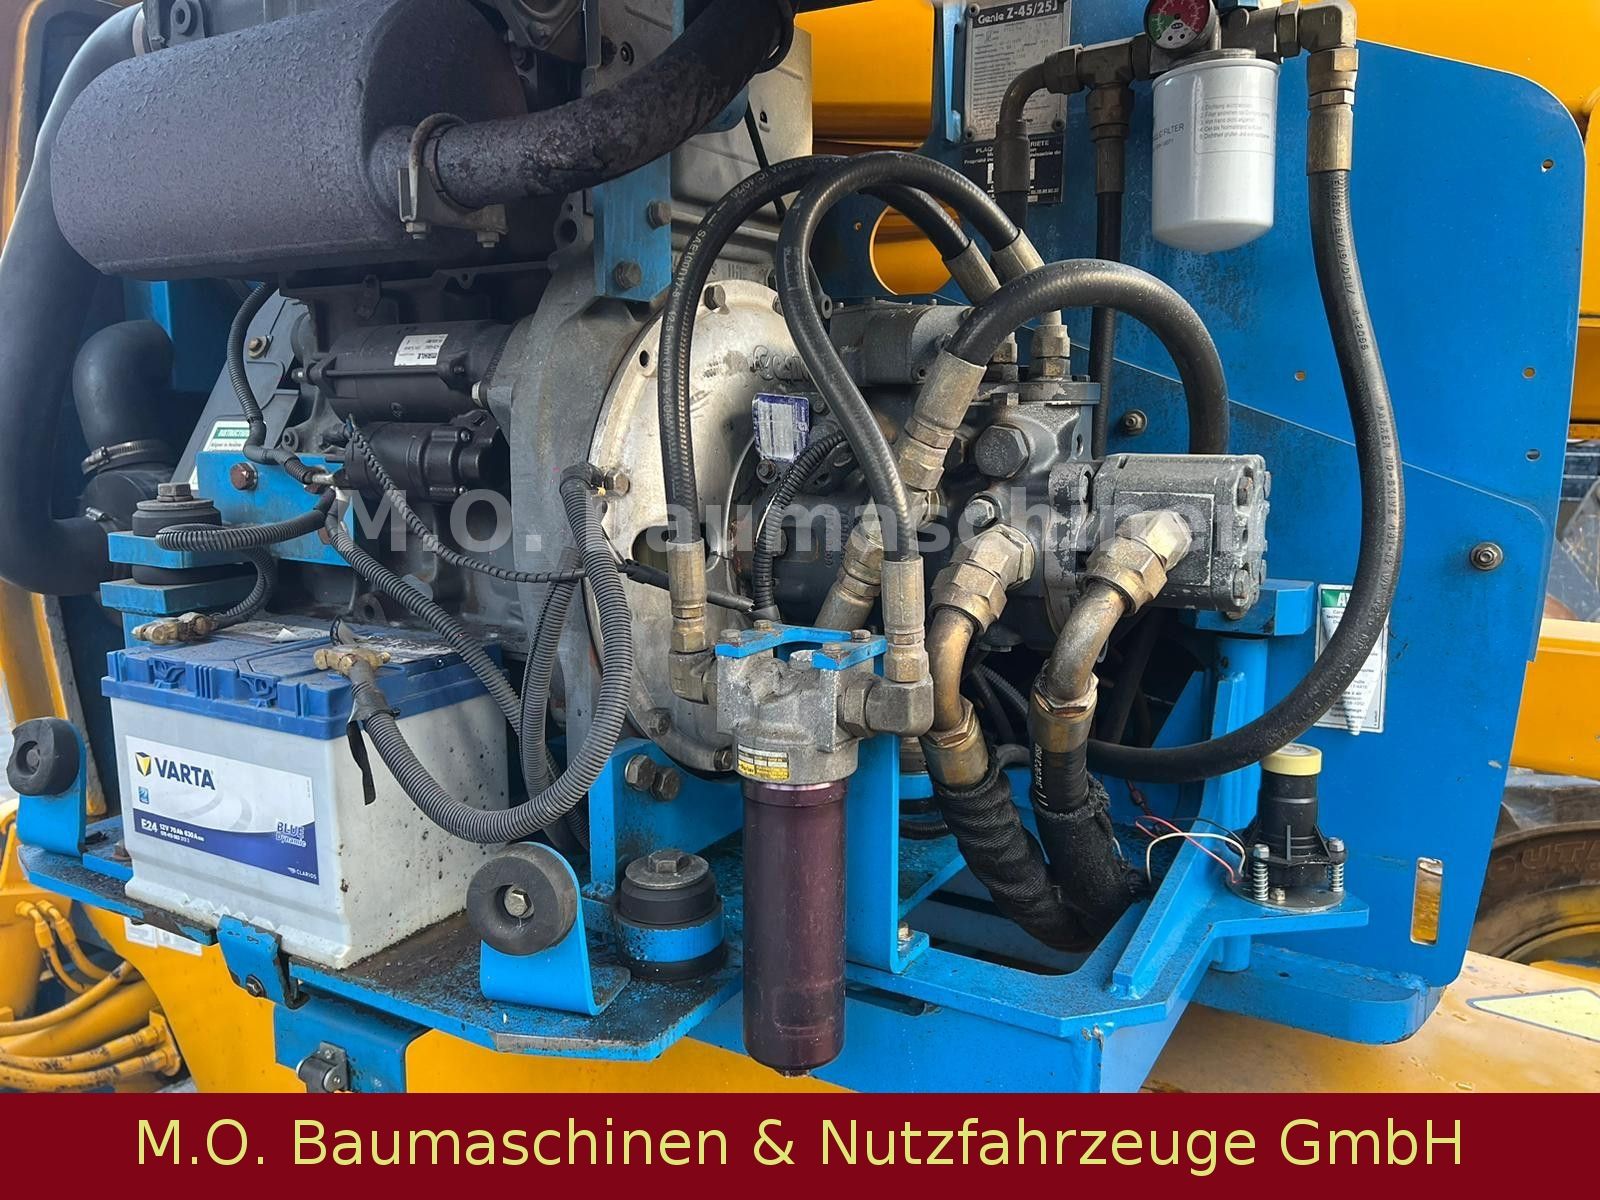 Fahrzeugabbildung Genie Z 45/25 J / 16m / Arbeitsbühne / 4x4 / Diesel